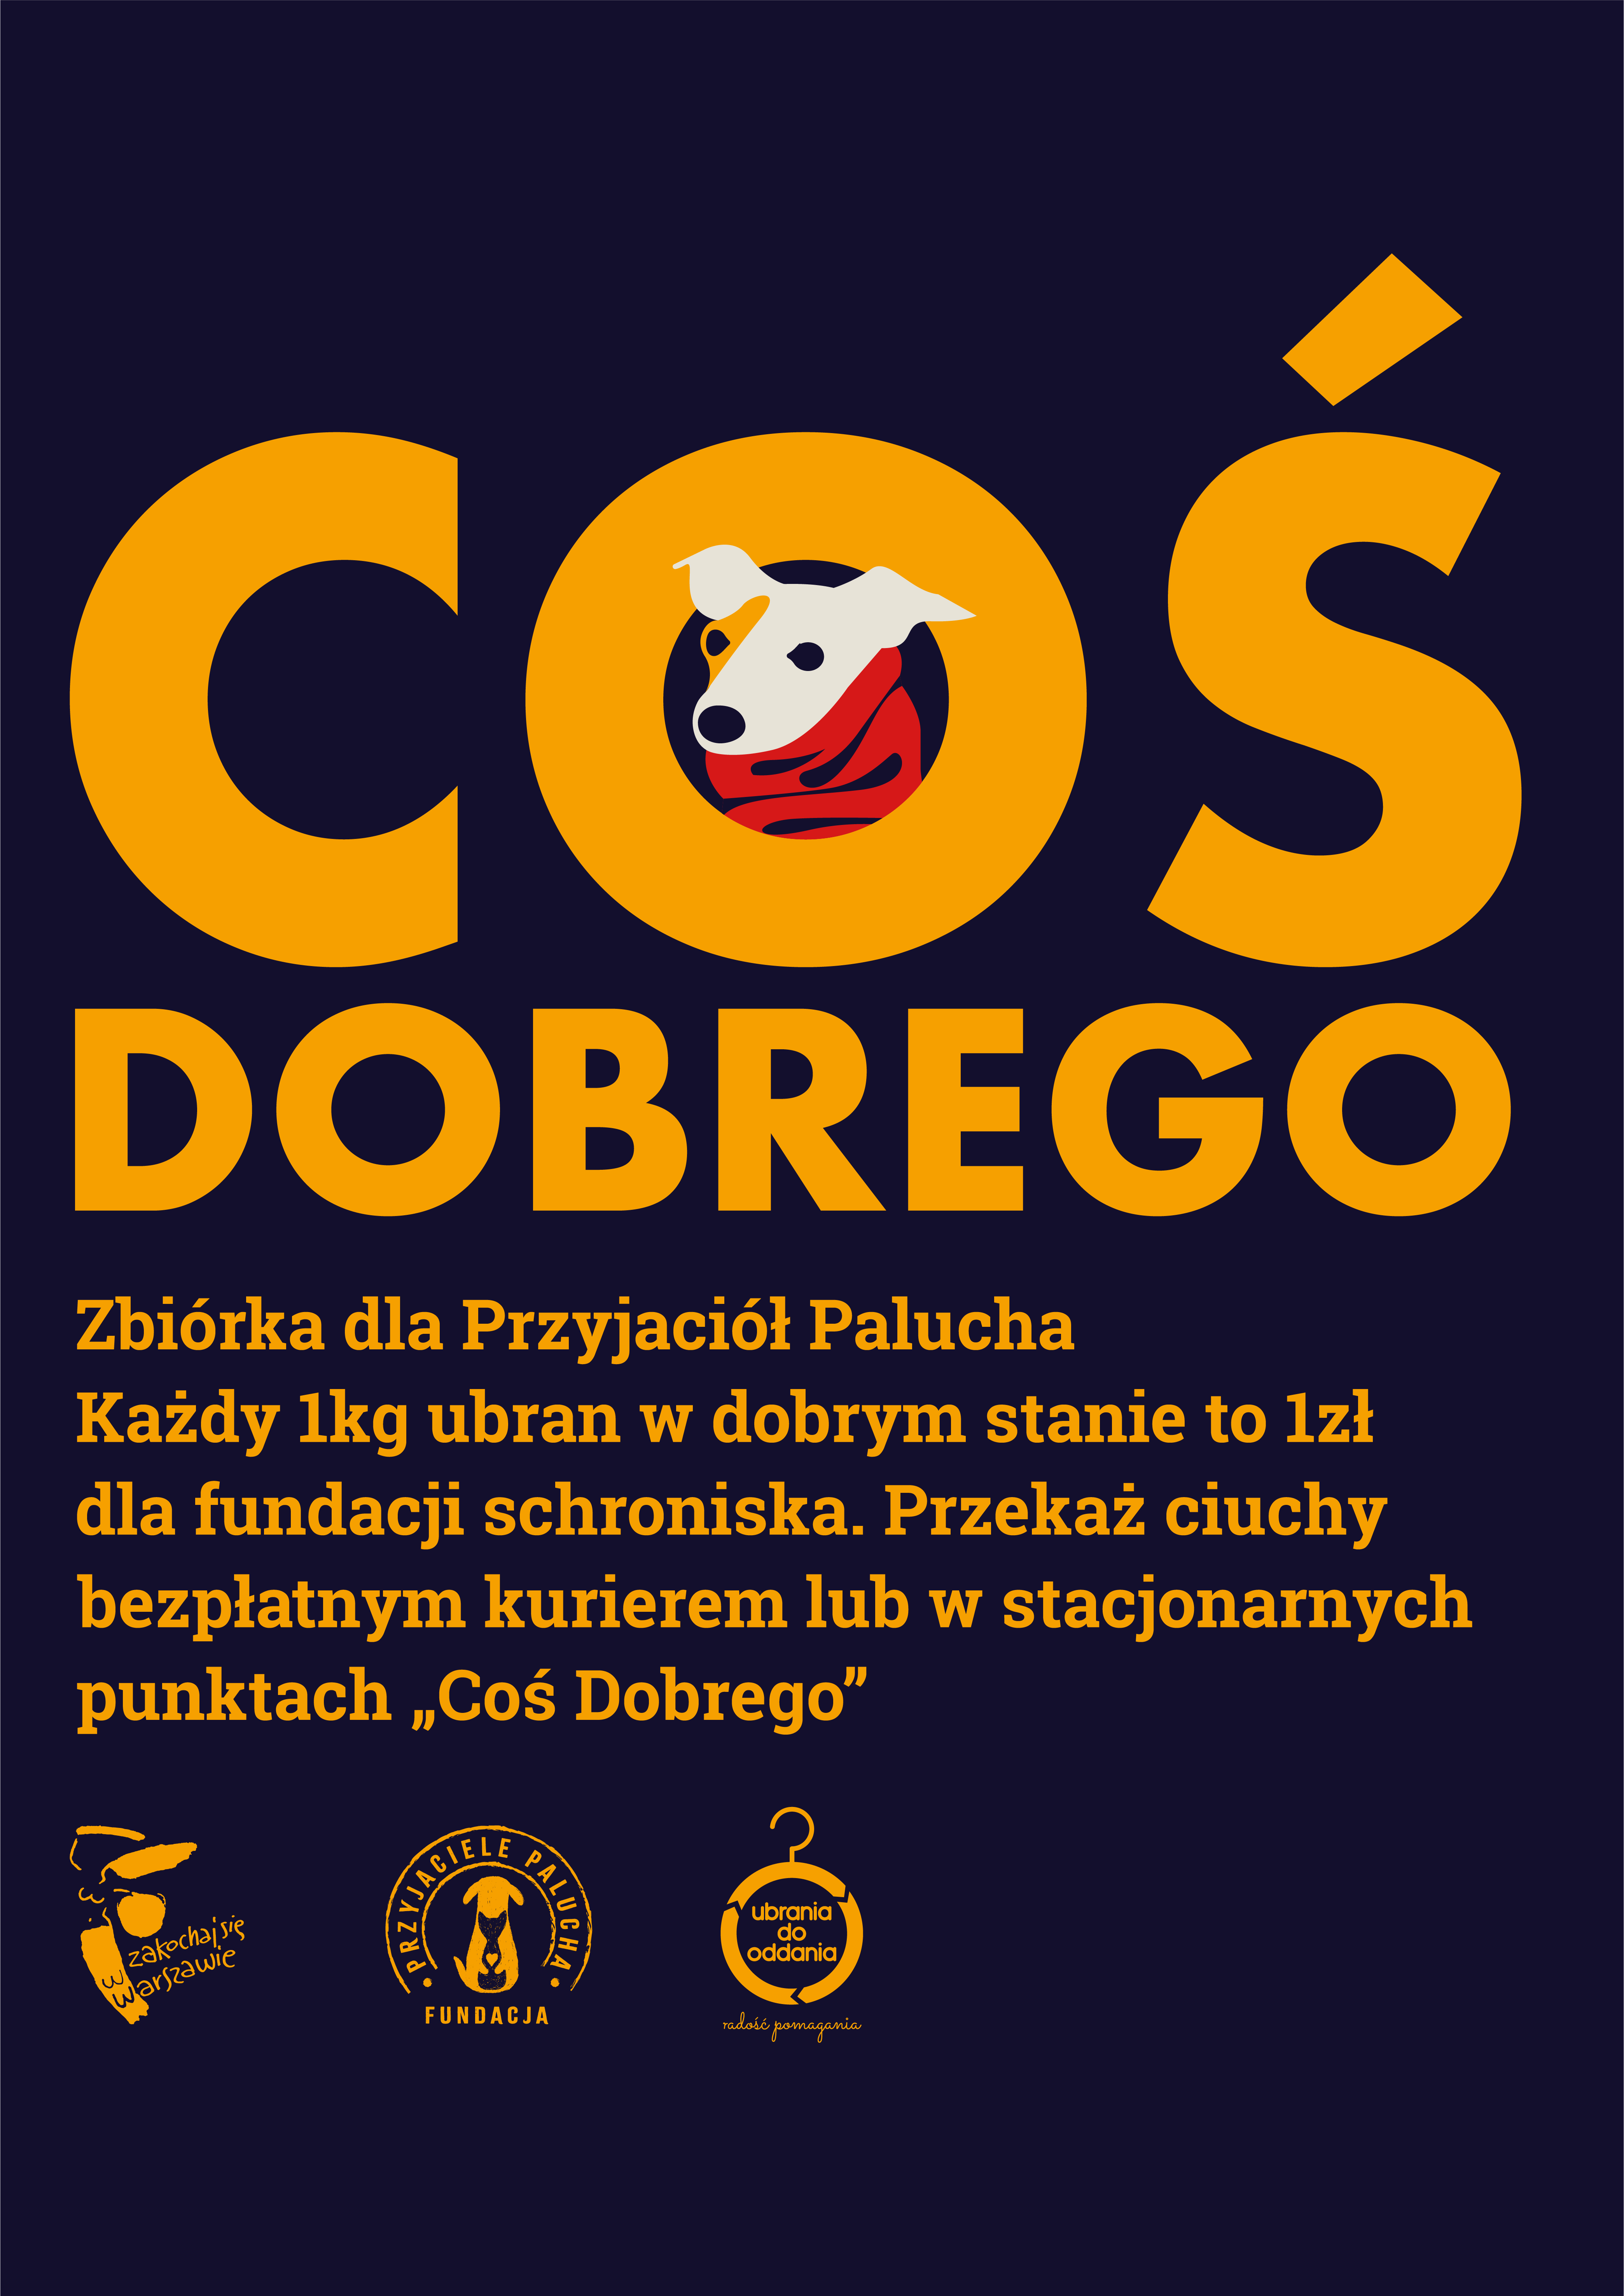 Plakat akcji "Coś dobrego dla Palucha" z informacjami zawartymi w tekście